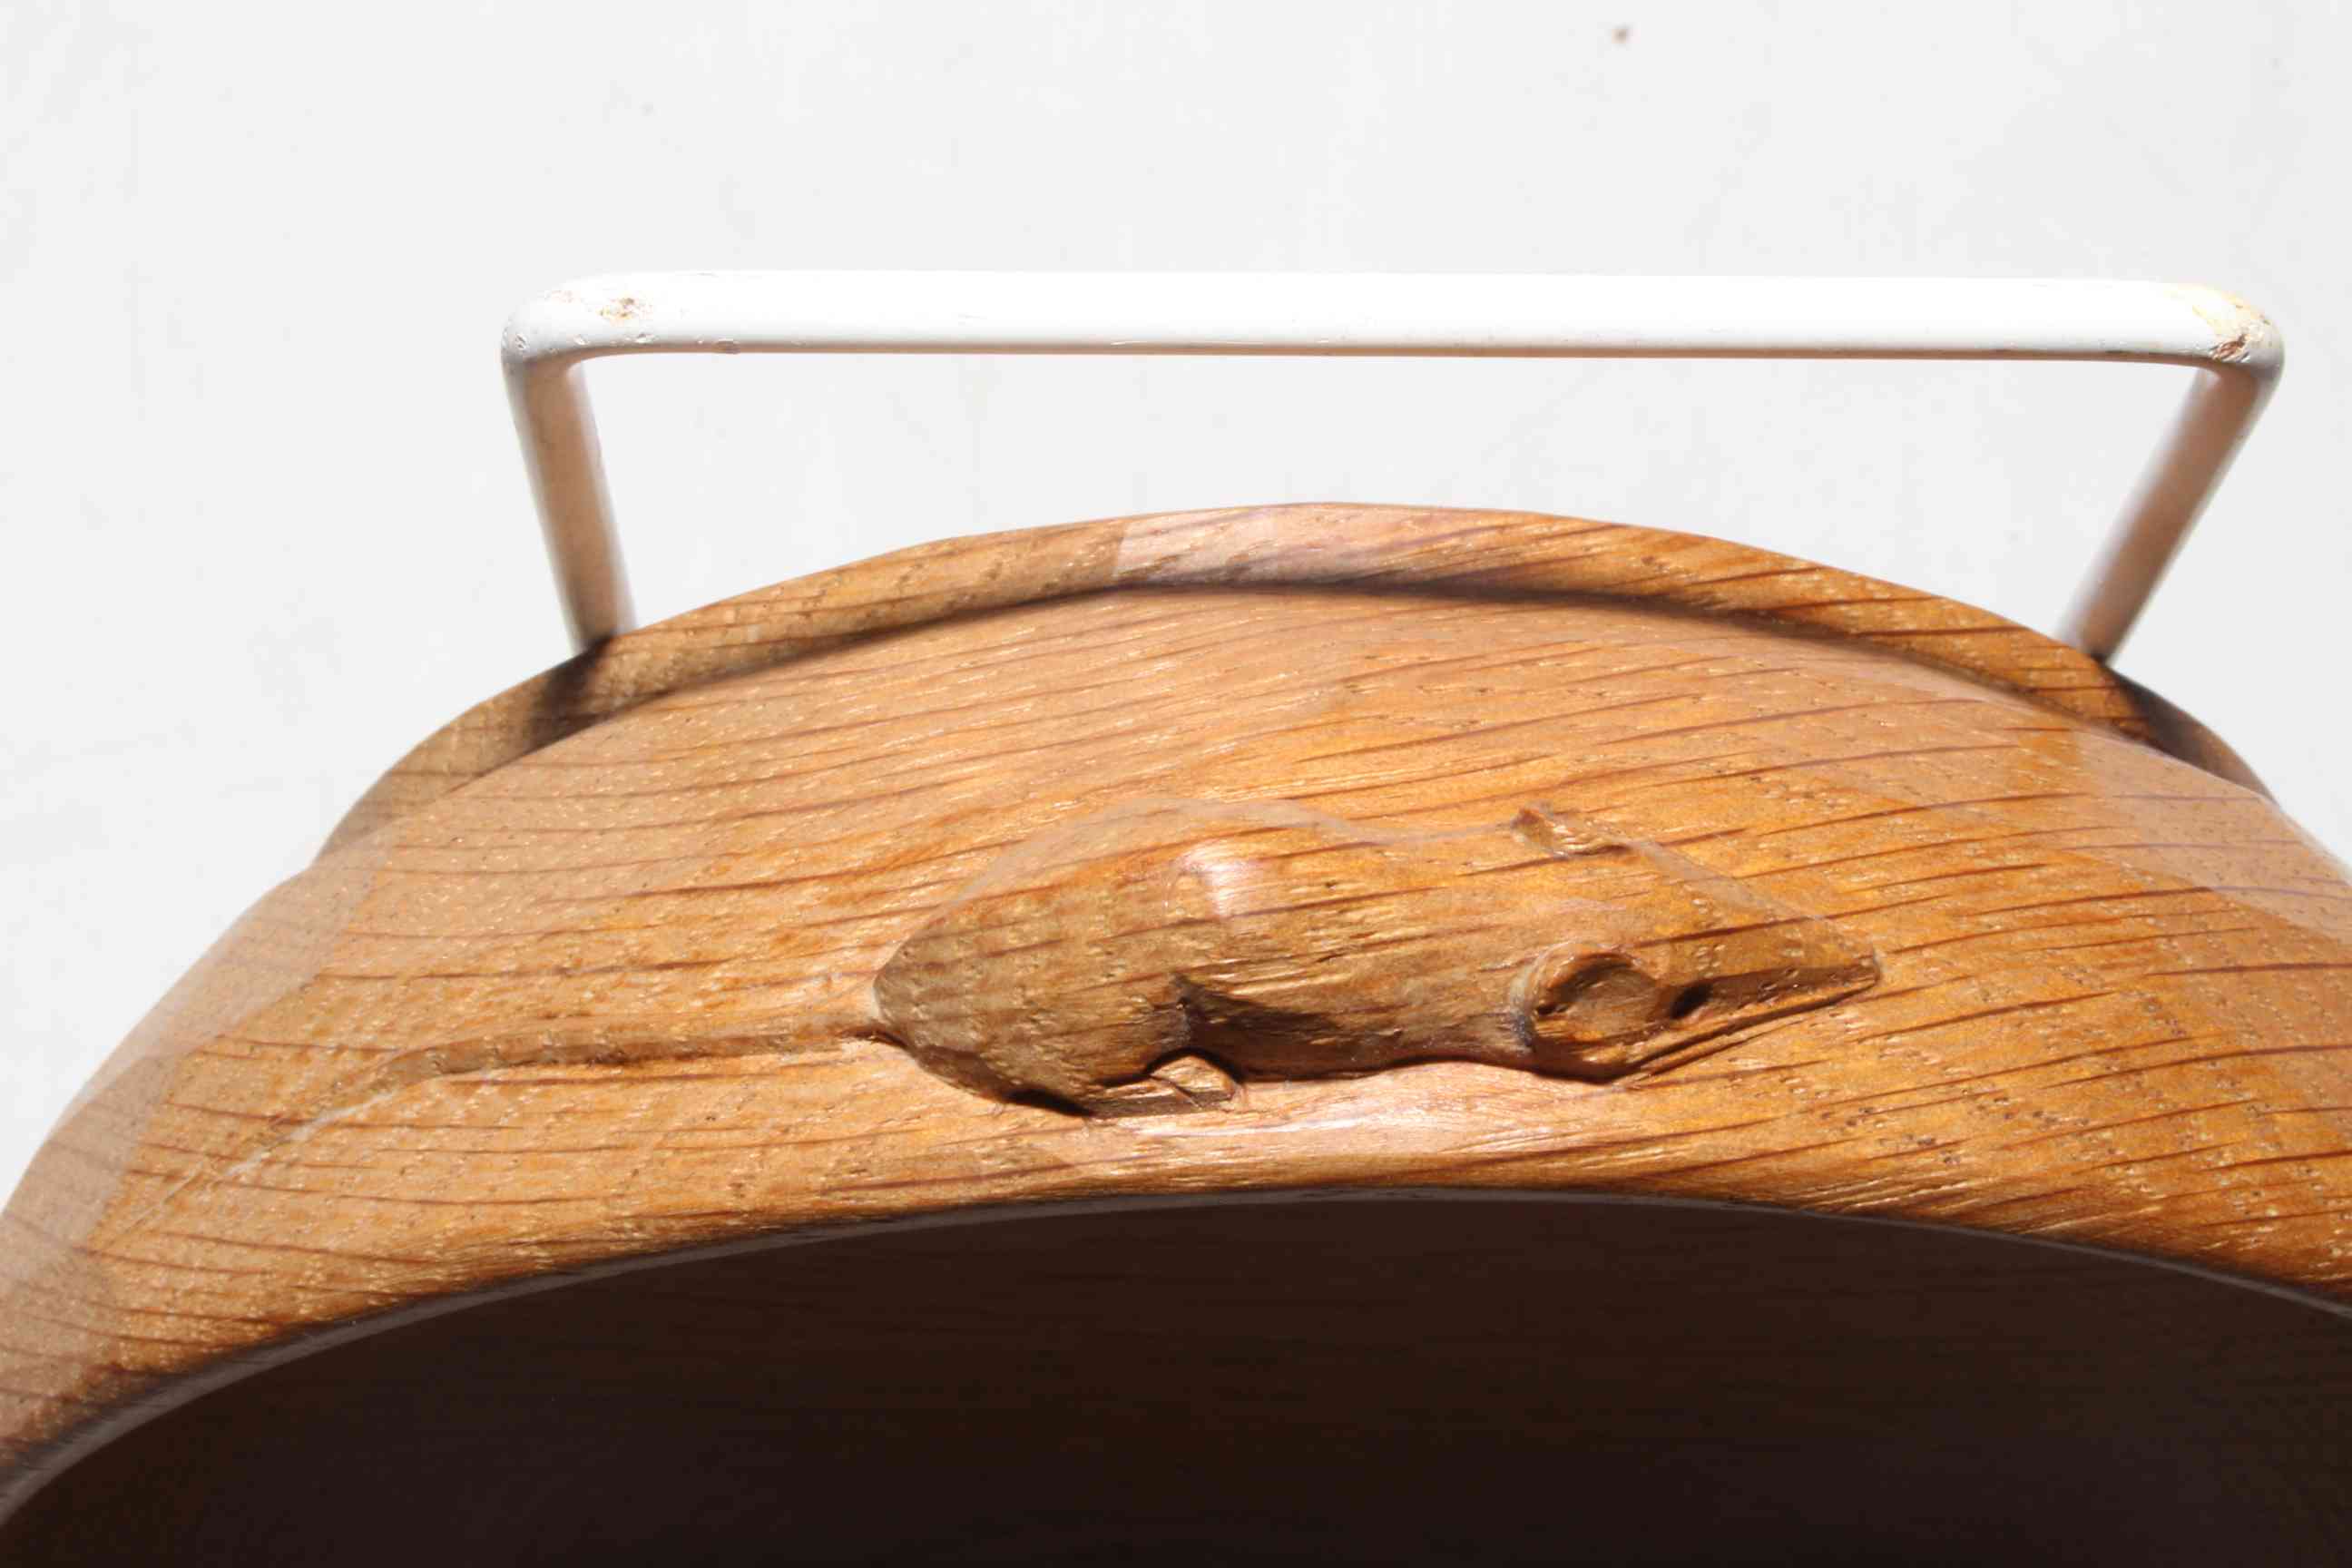 Robert Thompson of Kilburn 'Mouseman' oak nut bowl, 14.5cm diameter. - Image 2 of 2